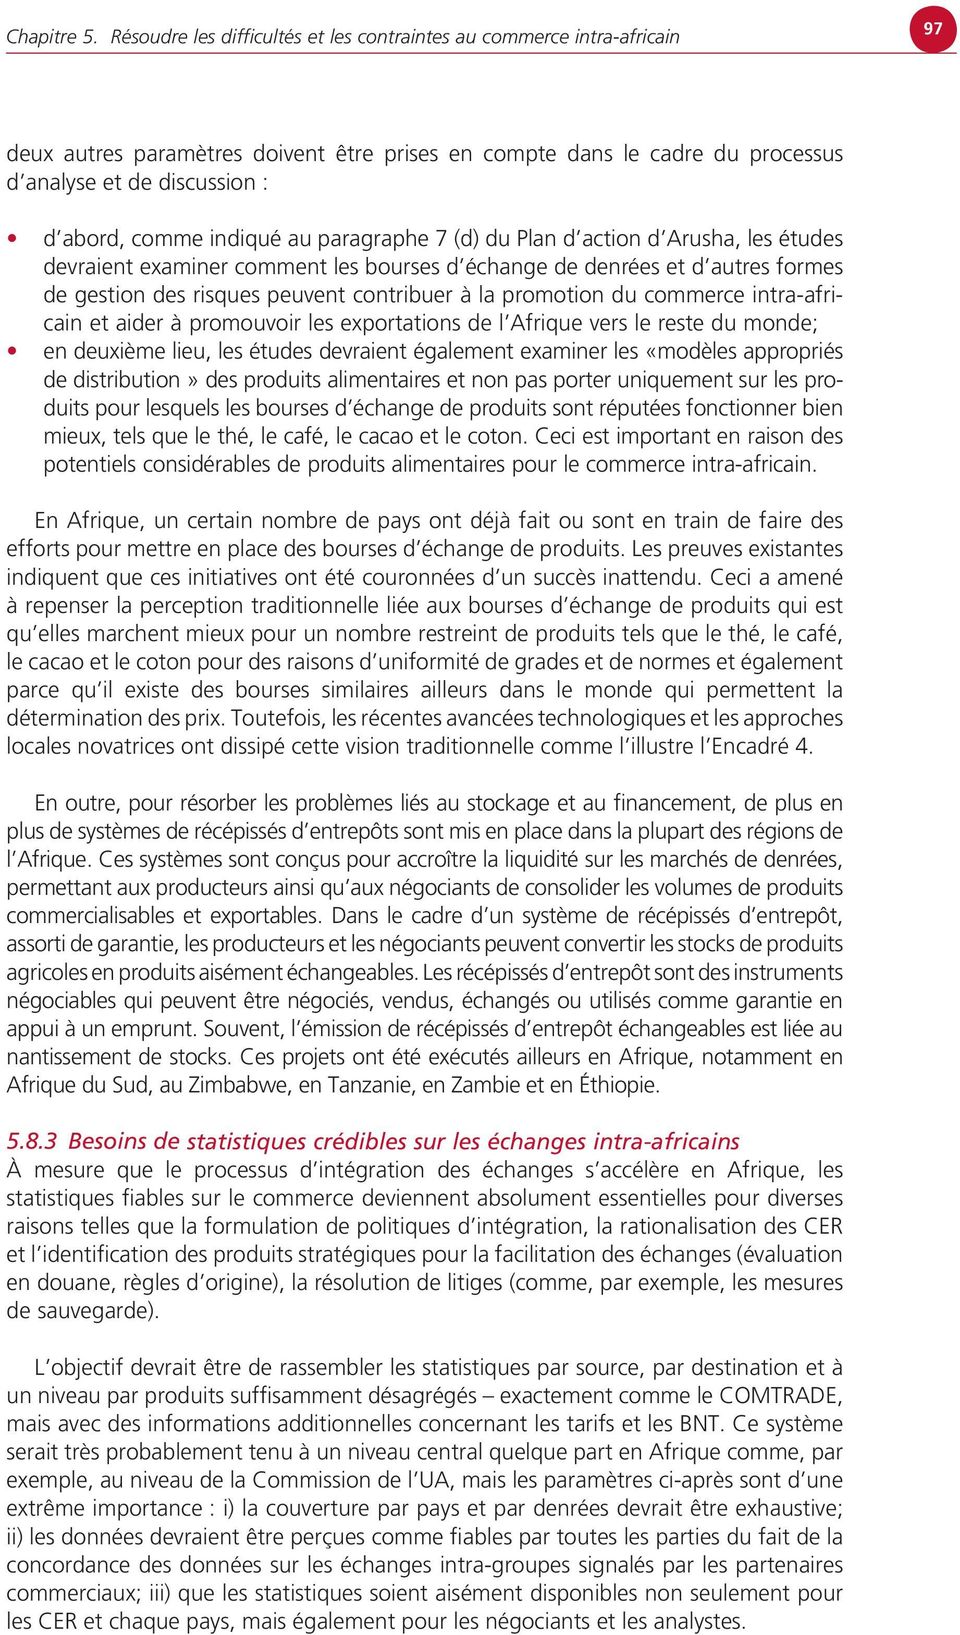 indiqué au paragraphe 7 (d) du Plan d action d Arusha, les études devraient examiner comment les bourses d échange de denrées et d autres formes de gestion des risques peuvent contribuer à la